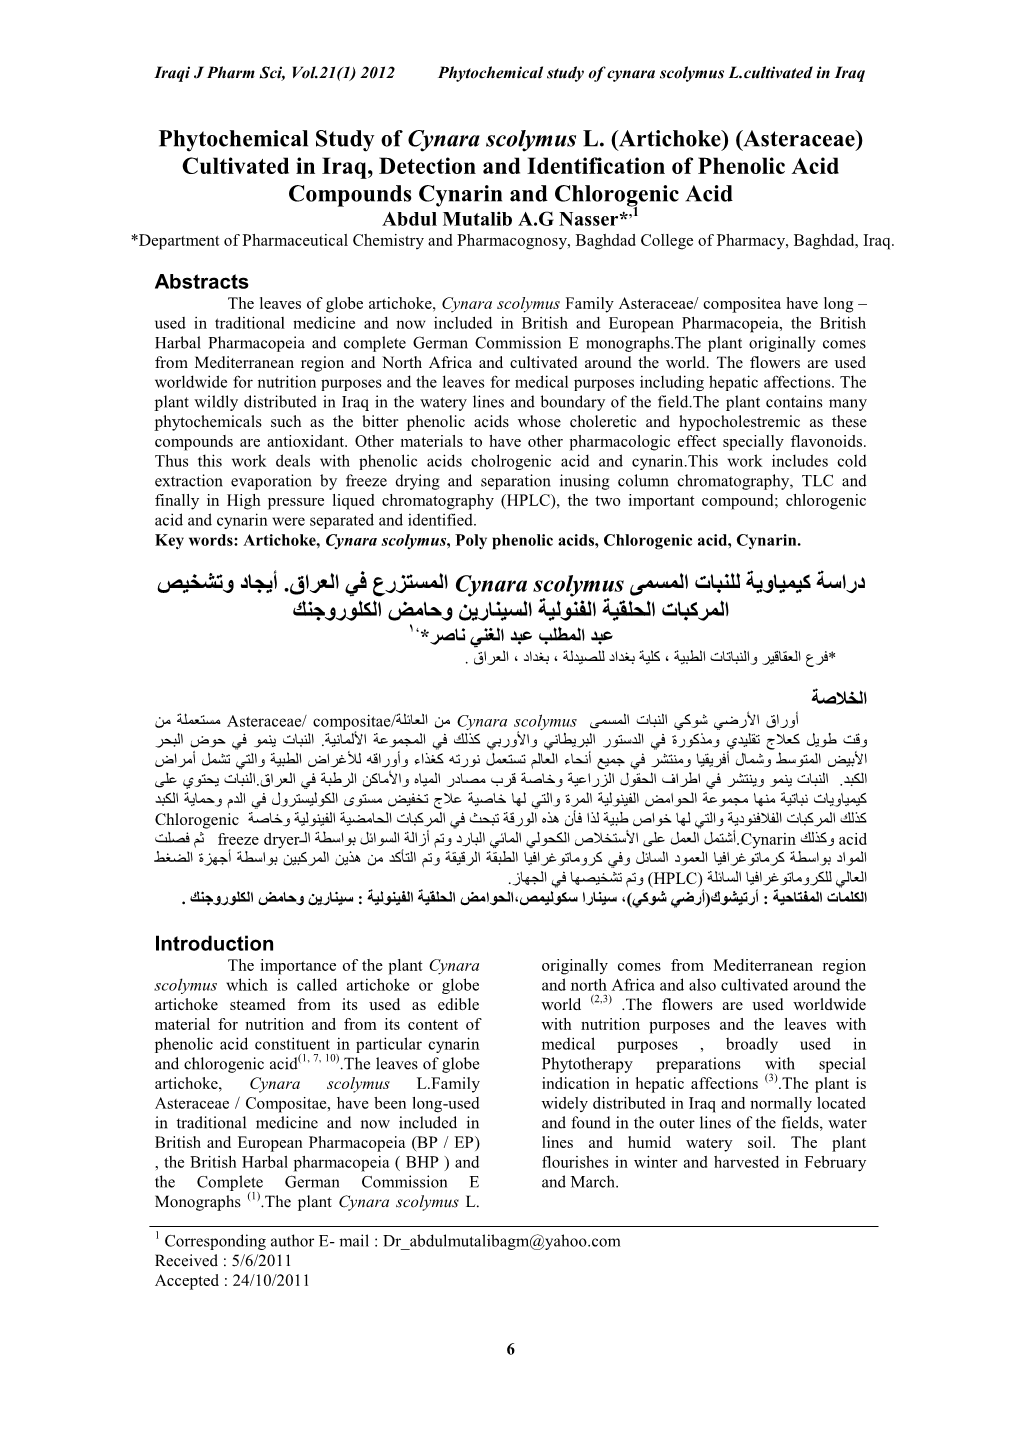 Phytochemical Study of Cynara Scolymus L. (Artichoke) (Asteraceae)